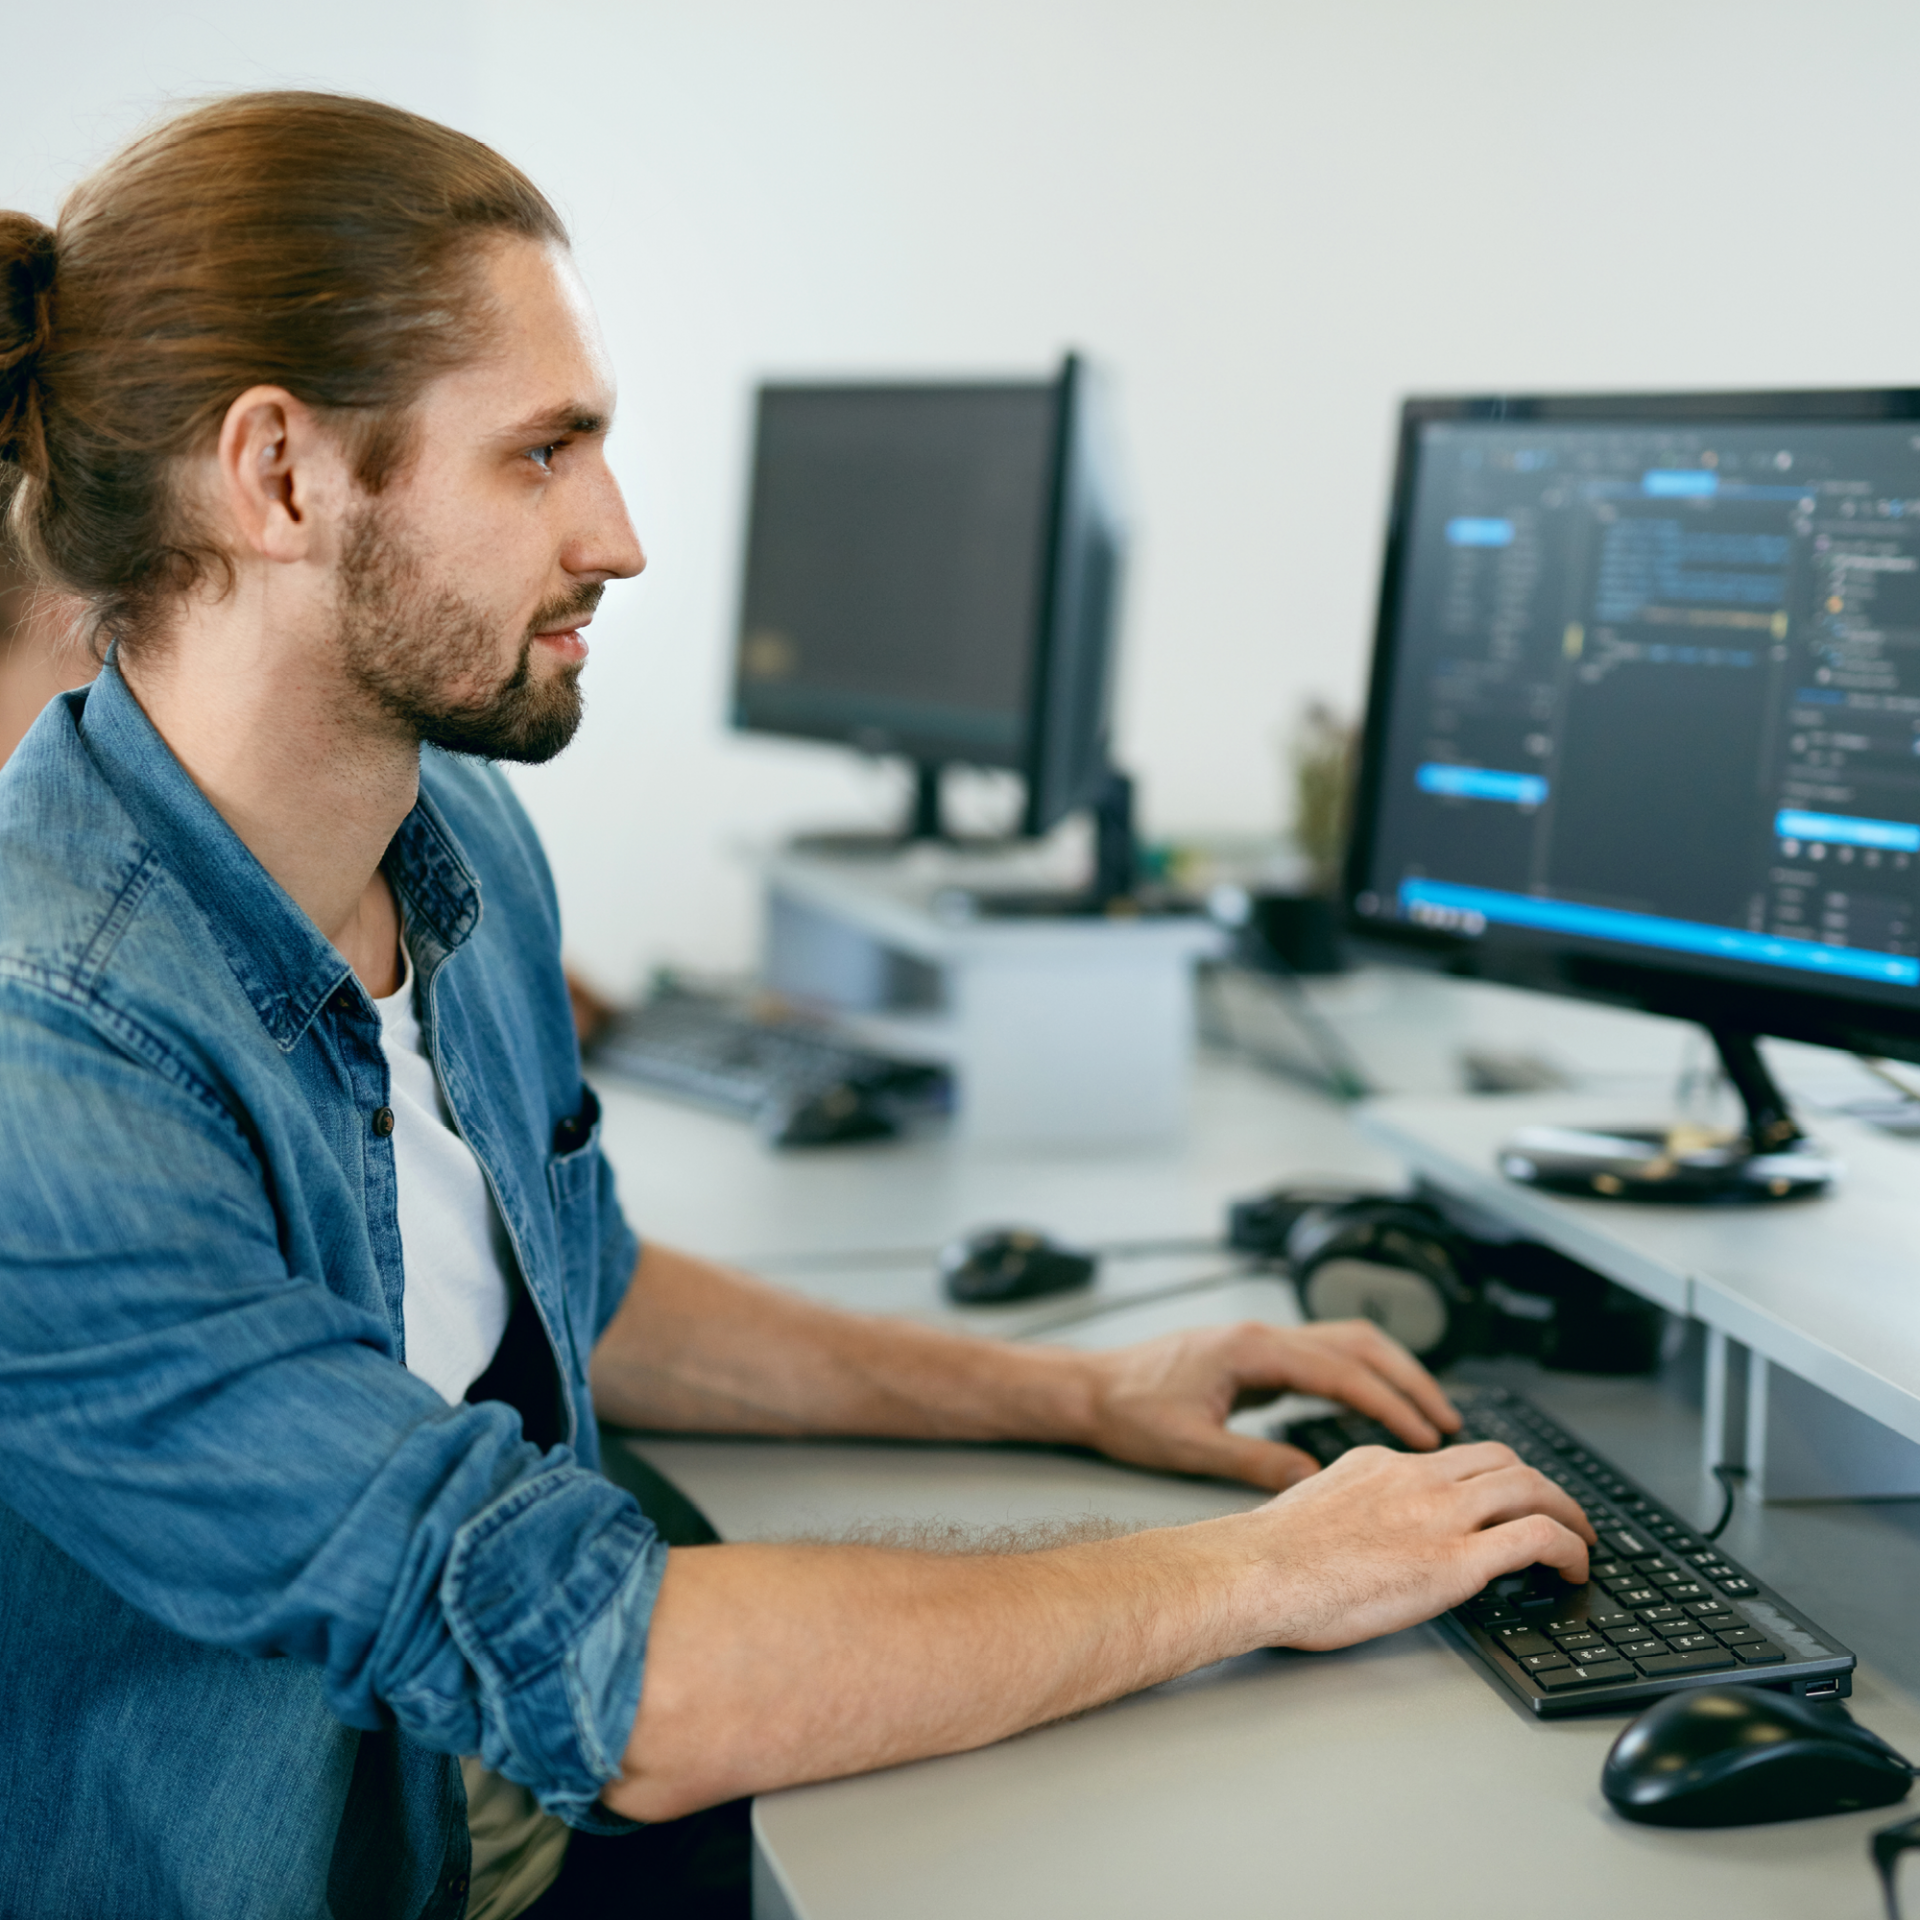 Homme qui écrit des codes sur un ordinateur, dans un bureau informatique